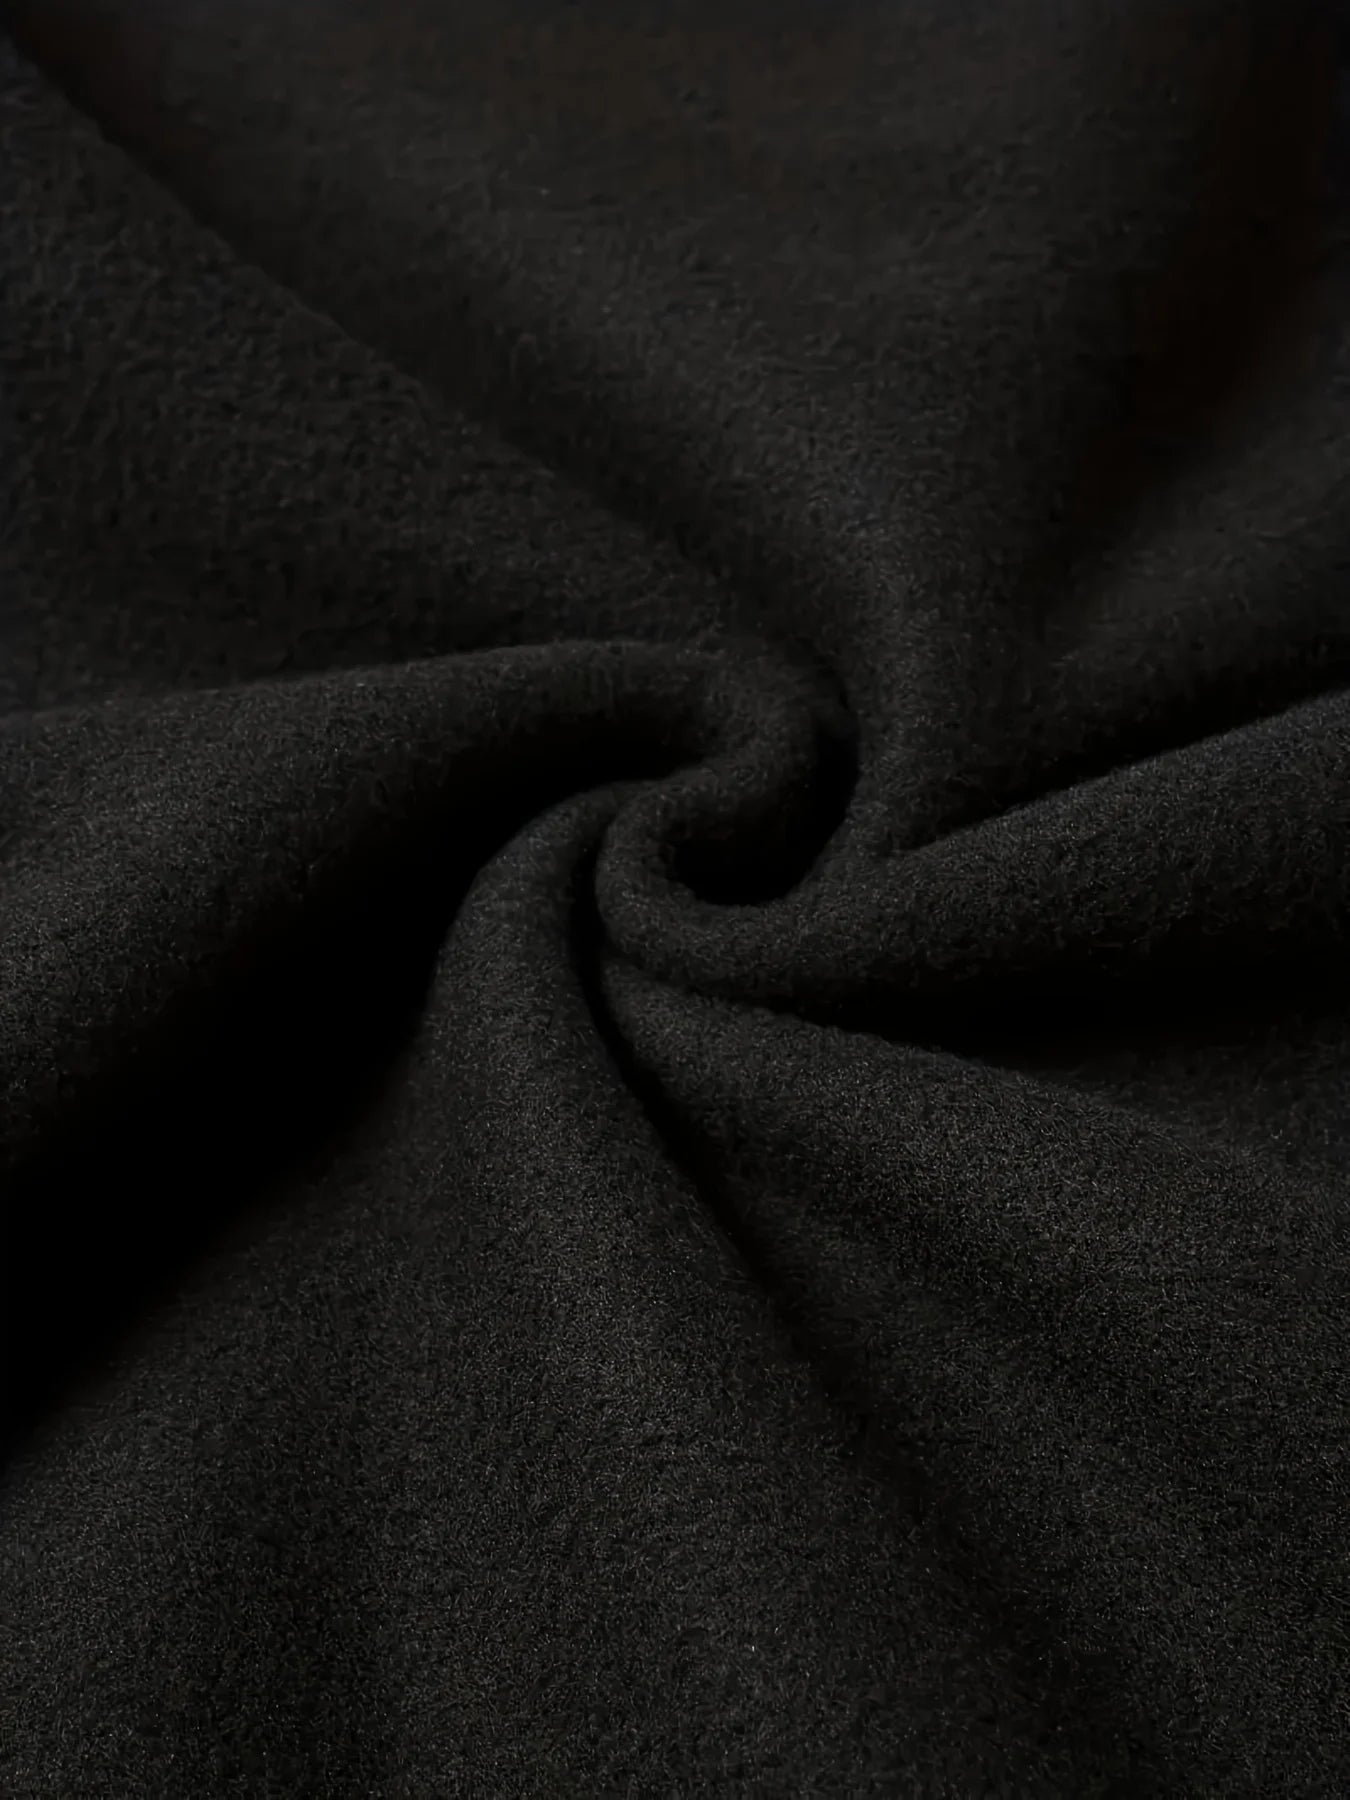 Dark Black Terror Print Fashion Round Neck Sweater Hoodie Autumn/Winter Warm Sweatshirt Black